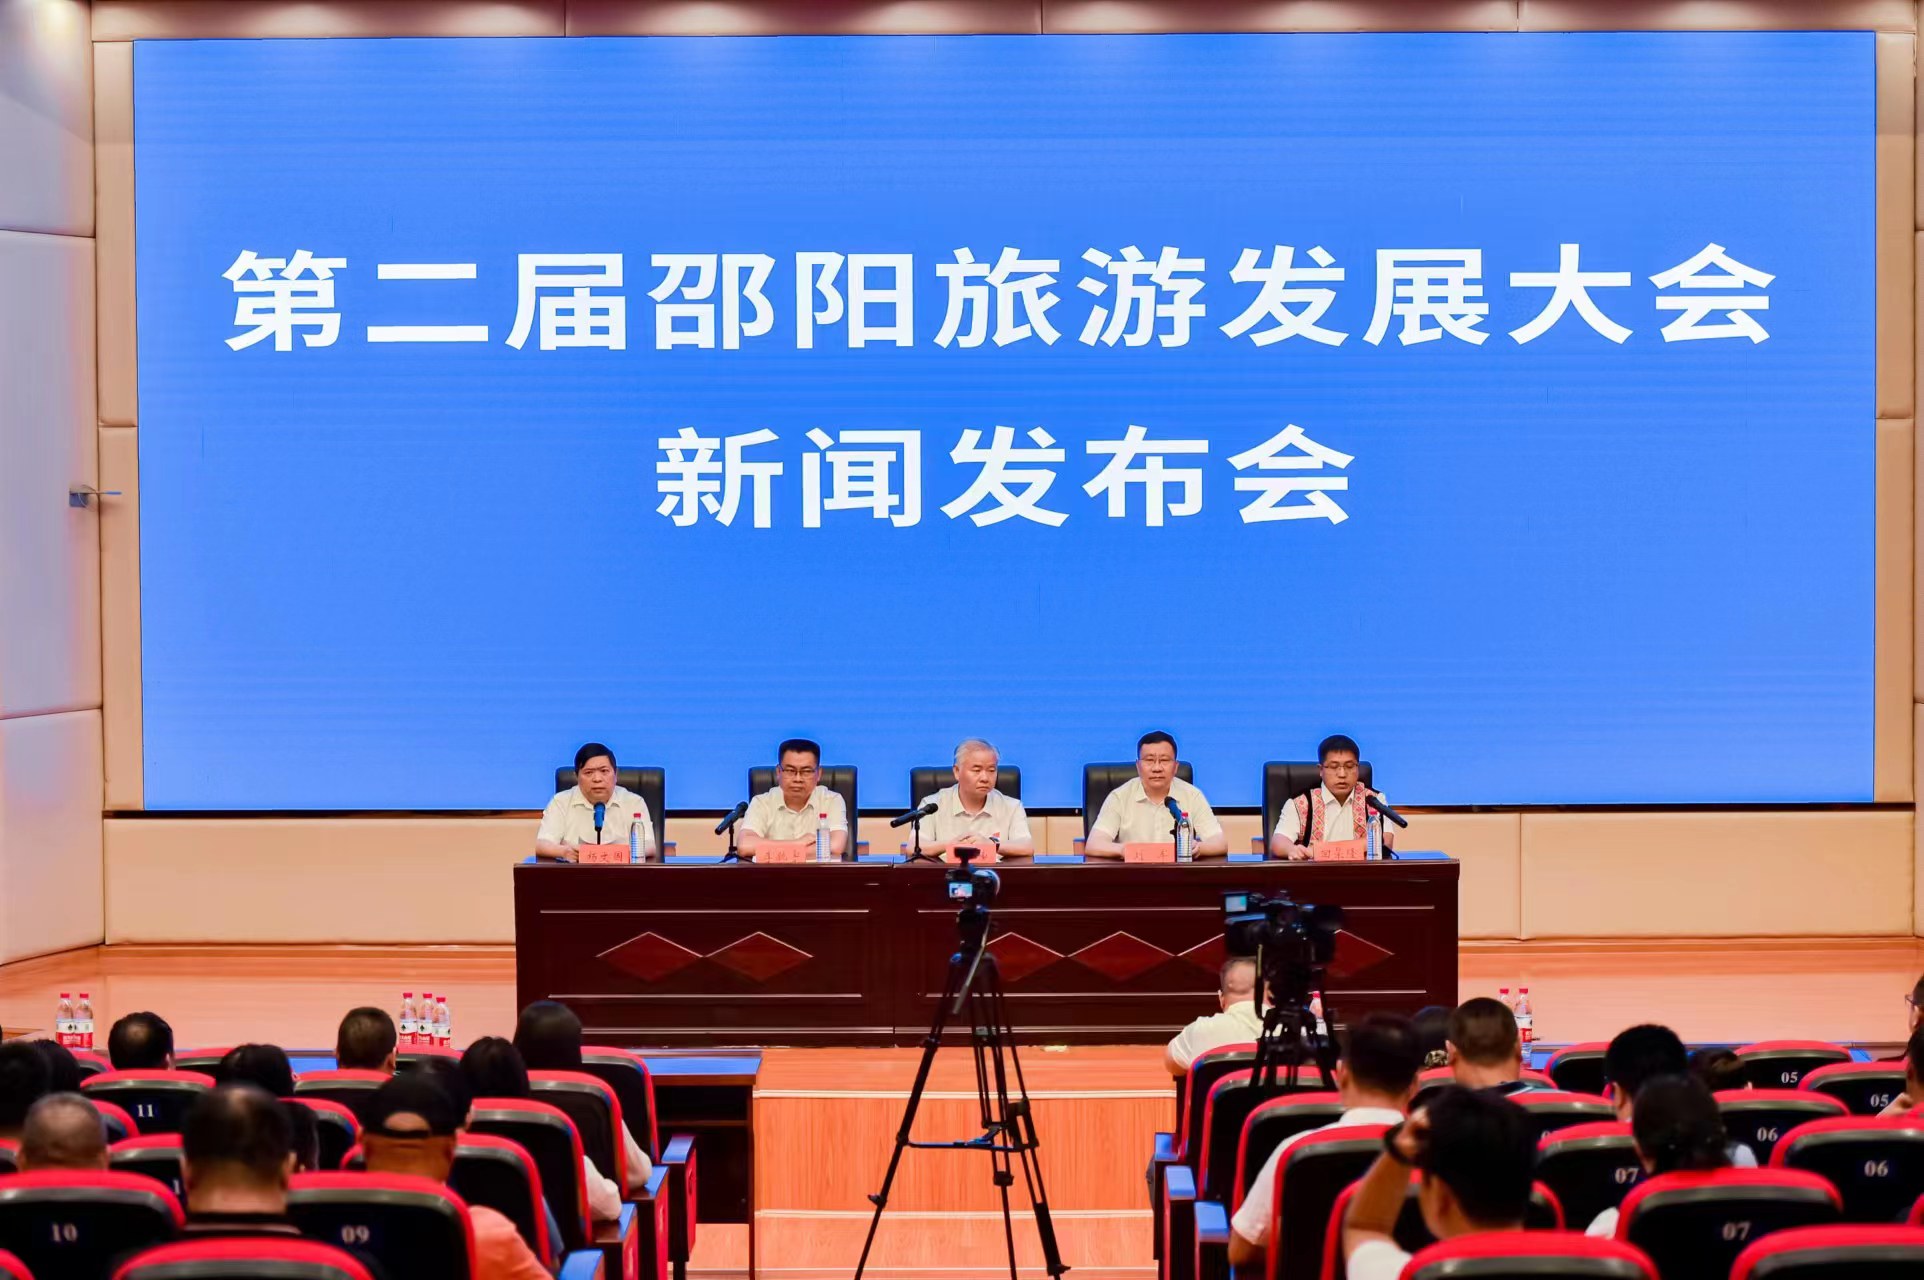 第二屆邵陽旅遊發展大會將於9月19日在湖南隆回啟幕